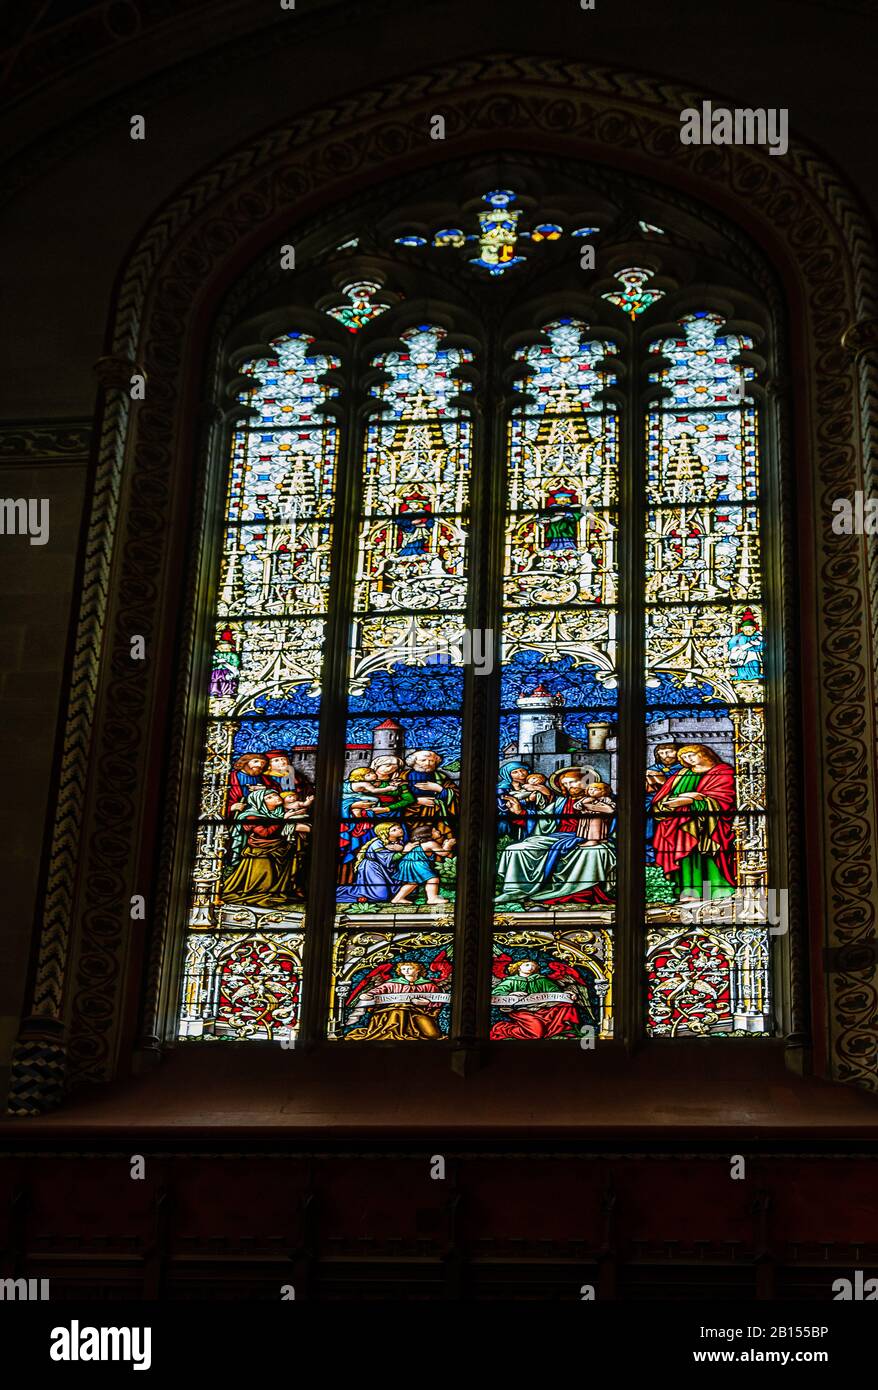 Genf, Schweiz - 14. April 2019: Reformierter Protestantischer Dom St. Pierre. Glasmalerei mit religiösen Motiven - Bild Stockfoto